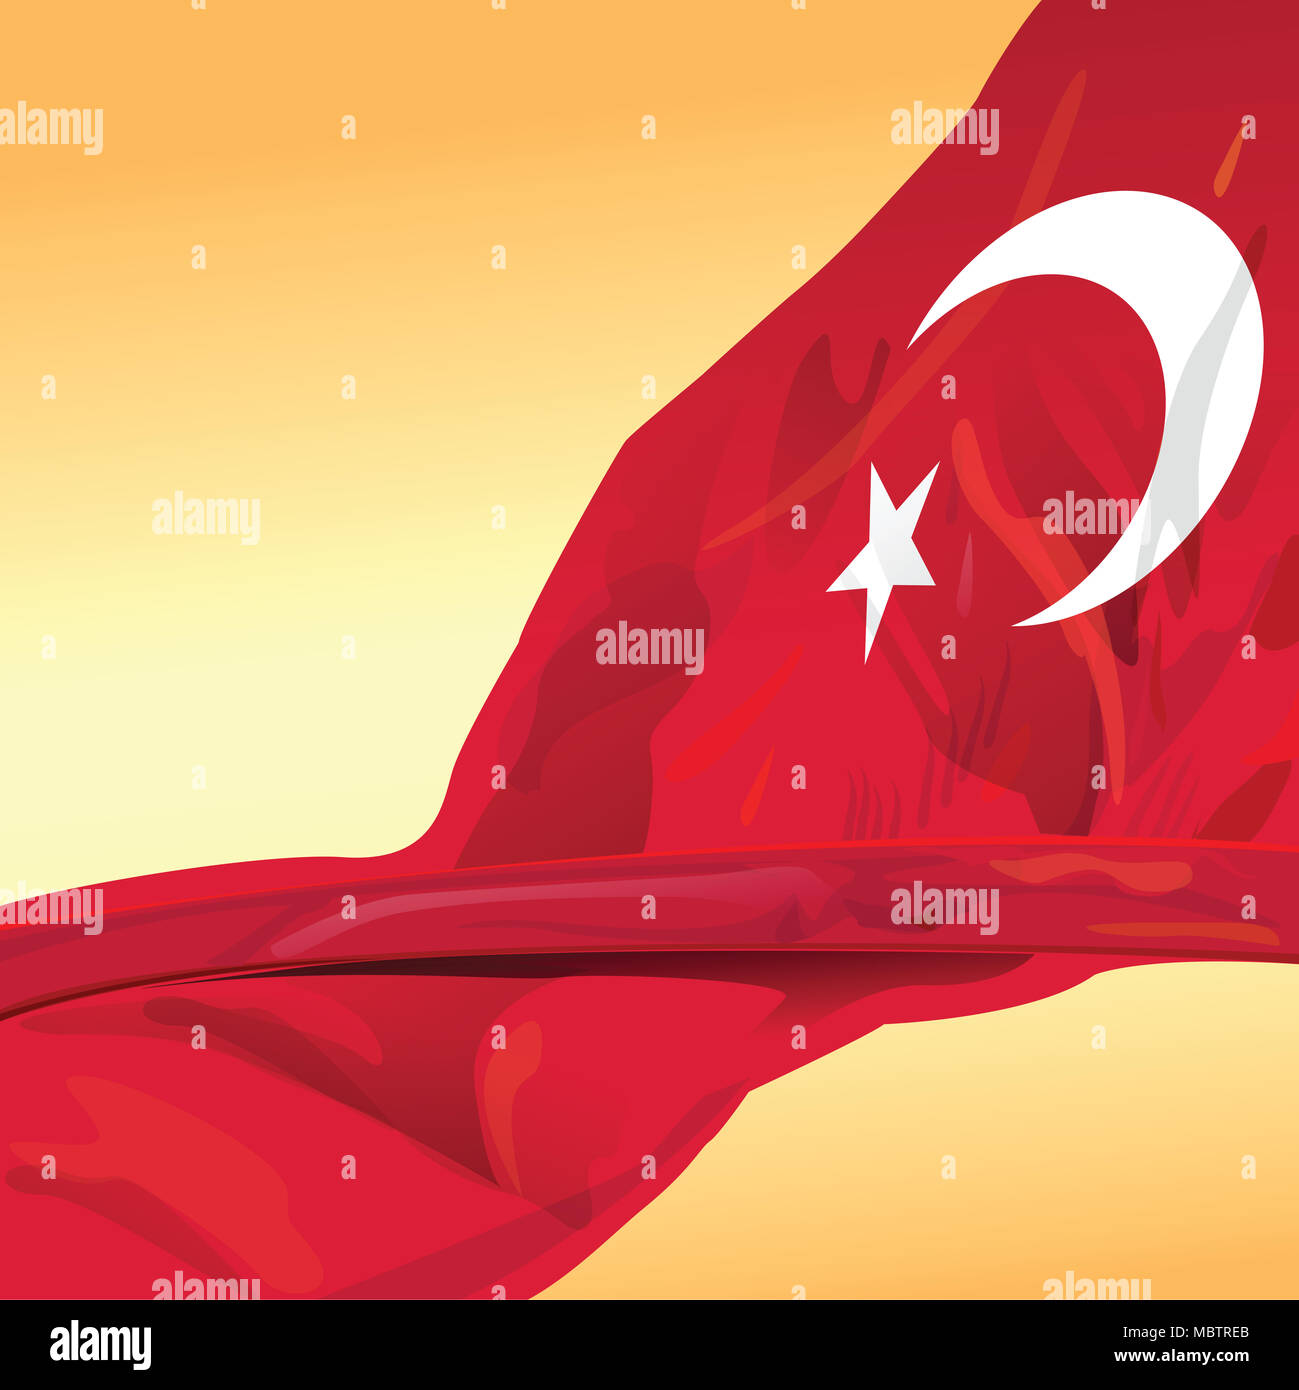 Rappresentano Bandiera della Turchia per elemento di design di grande potenza paese. Questo file vettoriale è organizzata in strati per separare tutti gli elementi grafici. Foto Stock